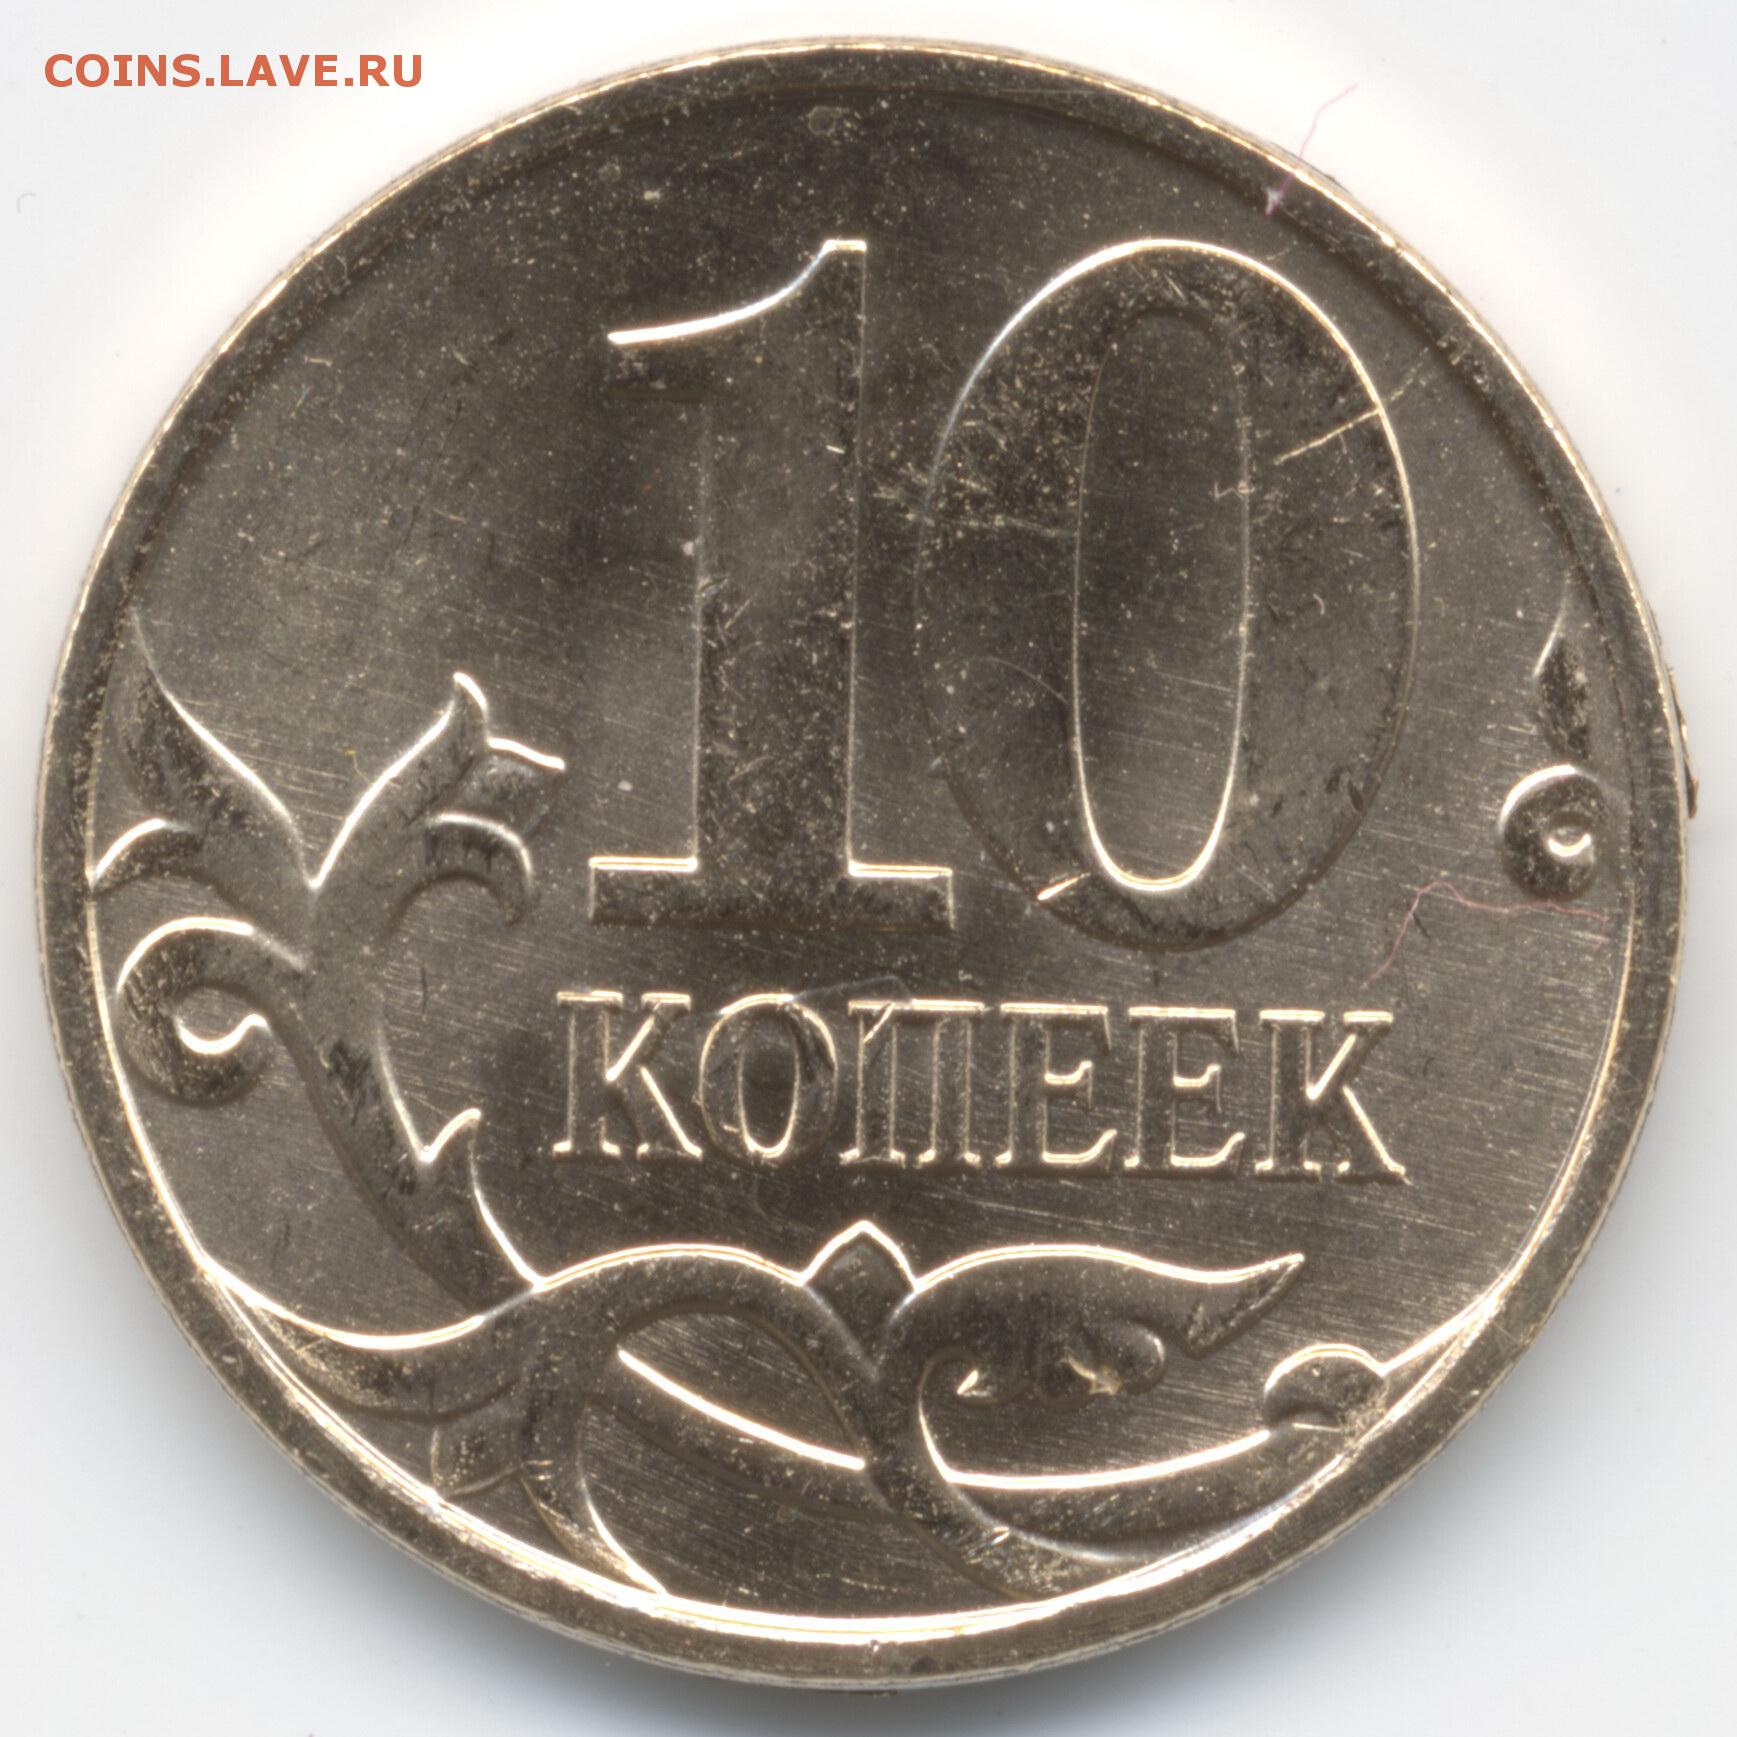 Где купить дешевые рубли. Монета 10 копеек. Копеечная монета. Российские монеты. Русские монеты.